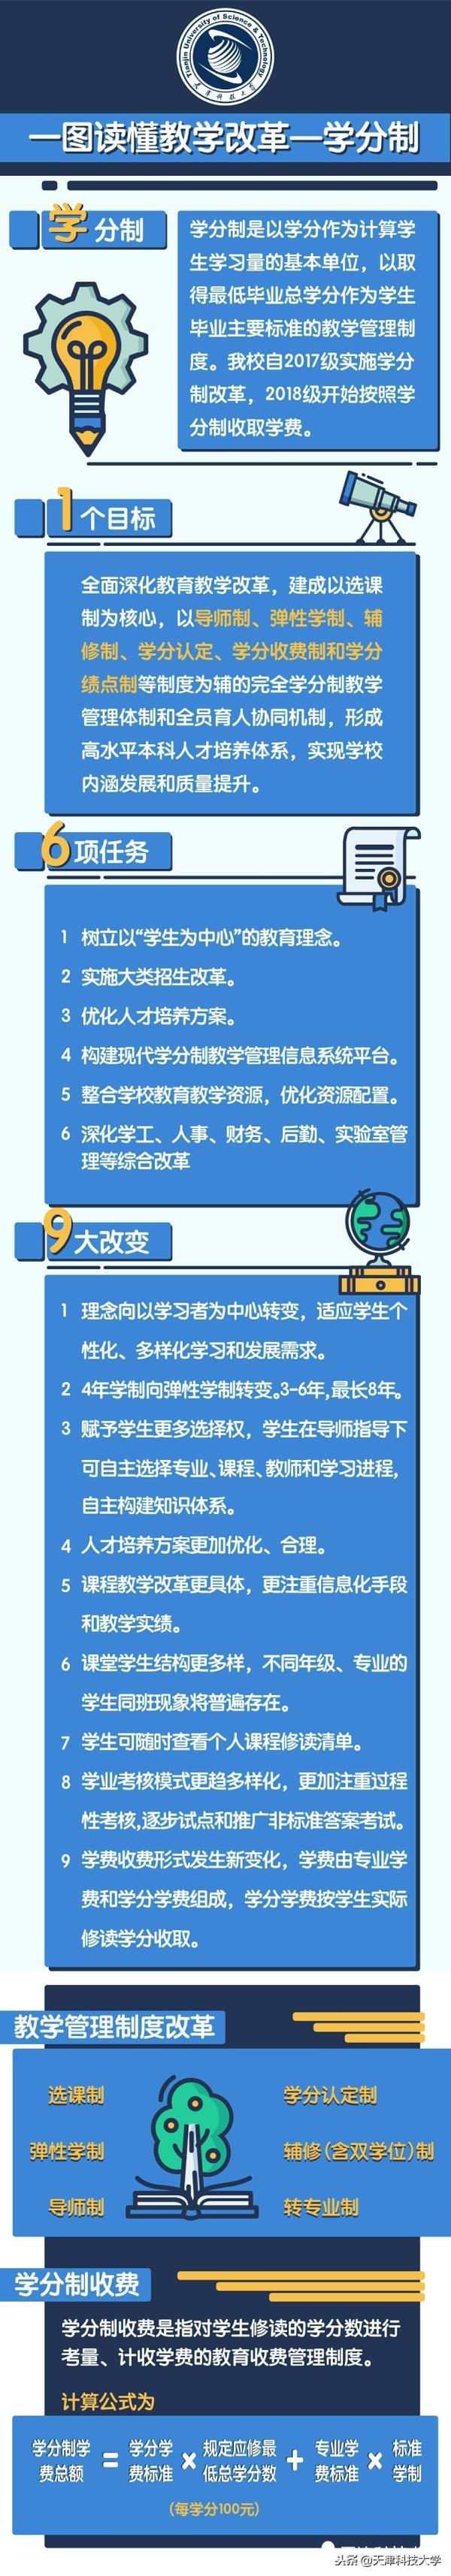 天津市高中课程学分结构表